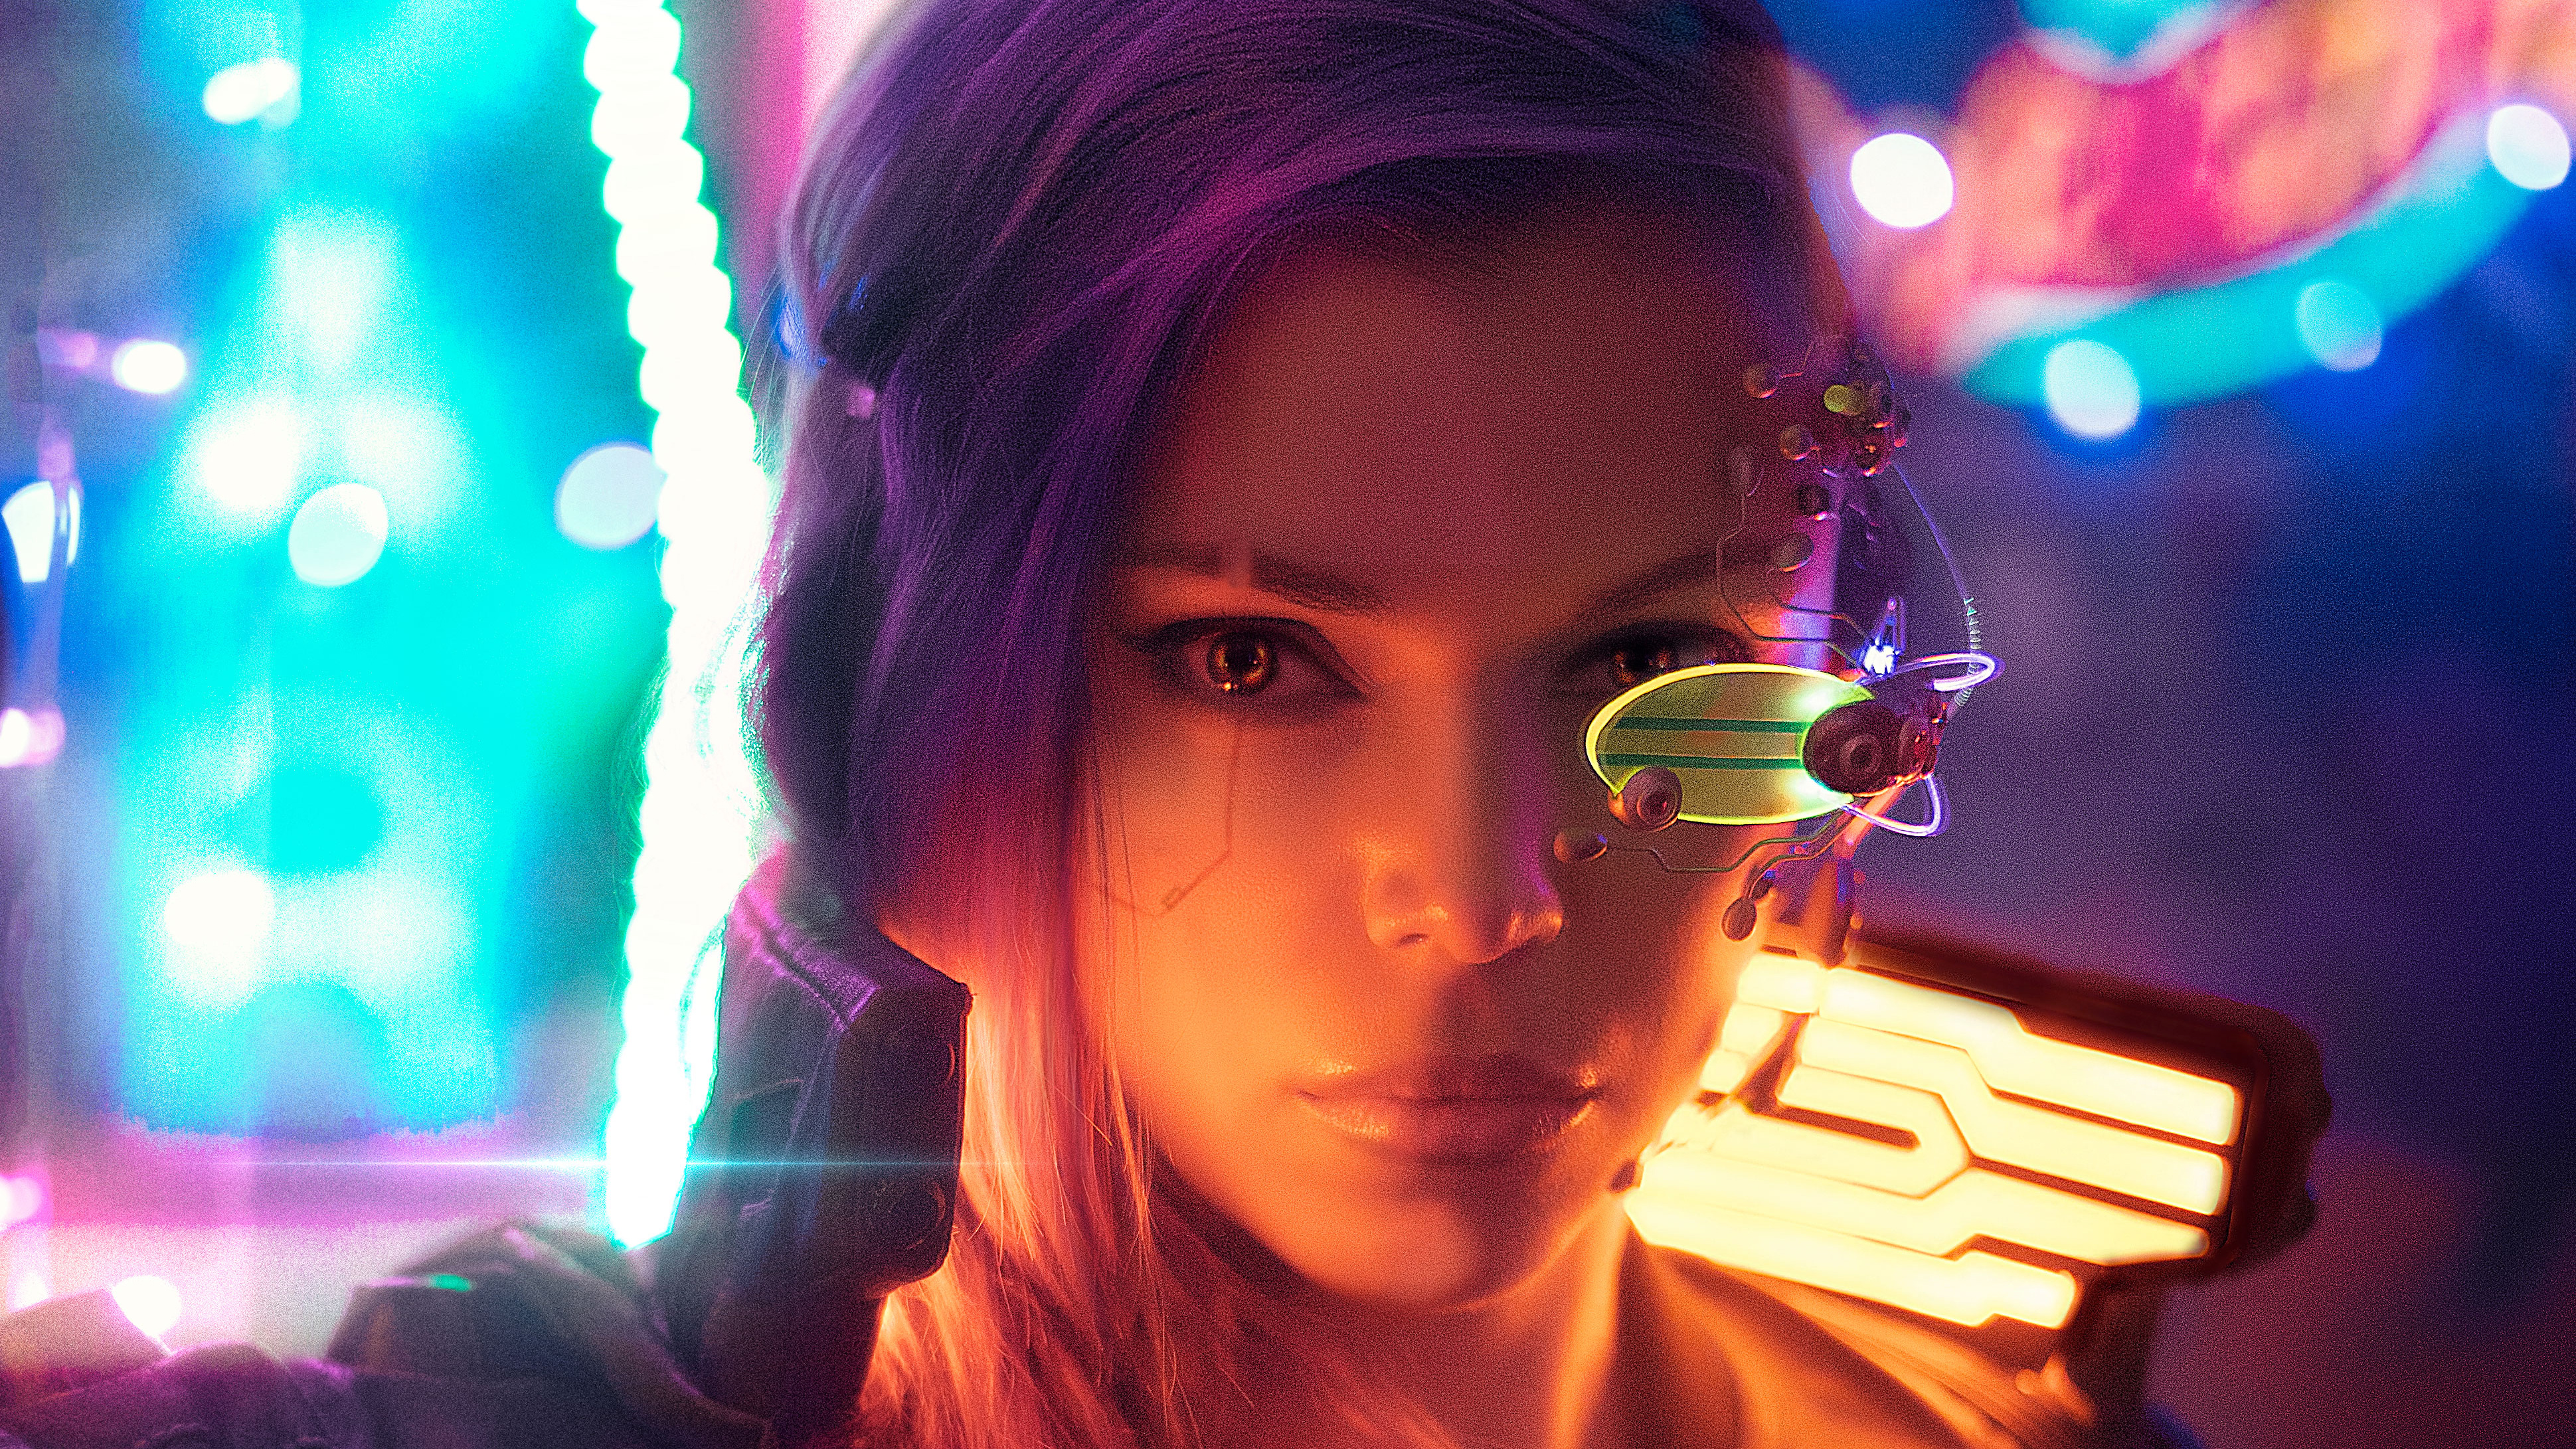 Free download wallpaper Cyberpunk, Sci Fi, Face, Purple Hair on your PC desktop